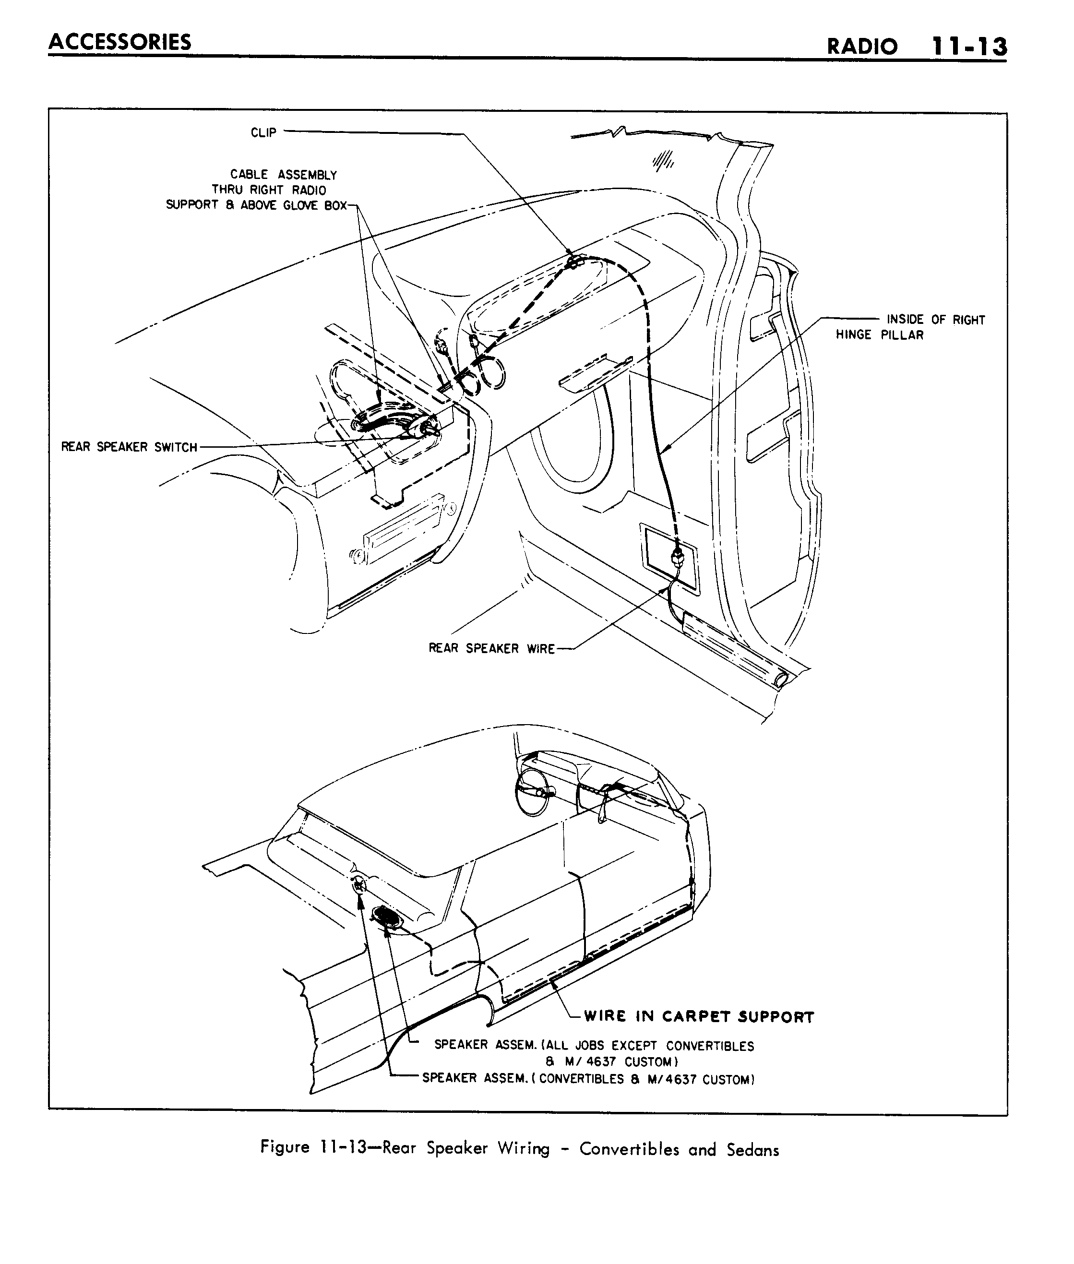 n_11 1961 Buick Shop Manual - Accessories-013-013.jpg